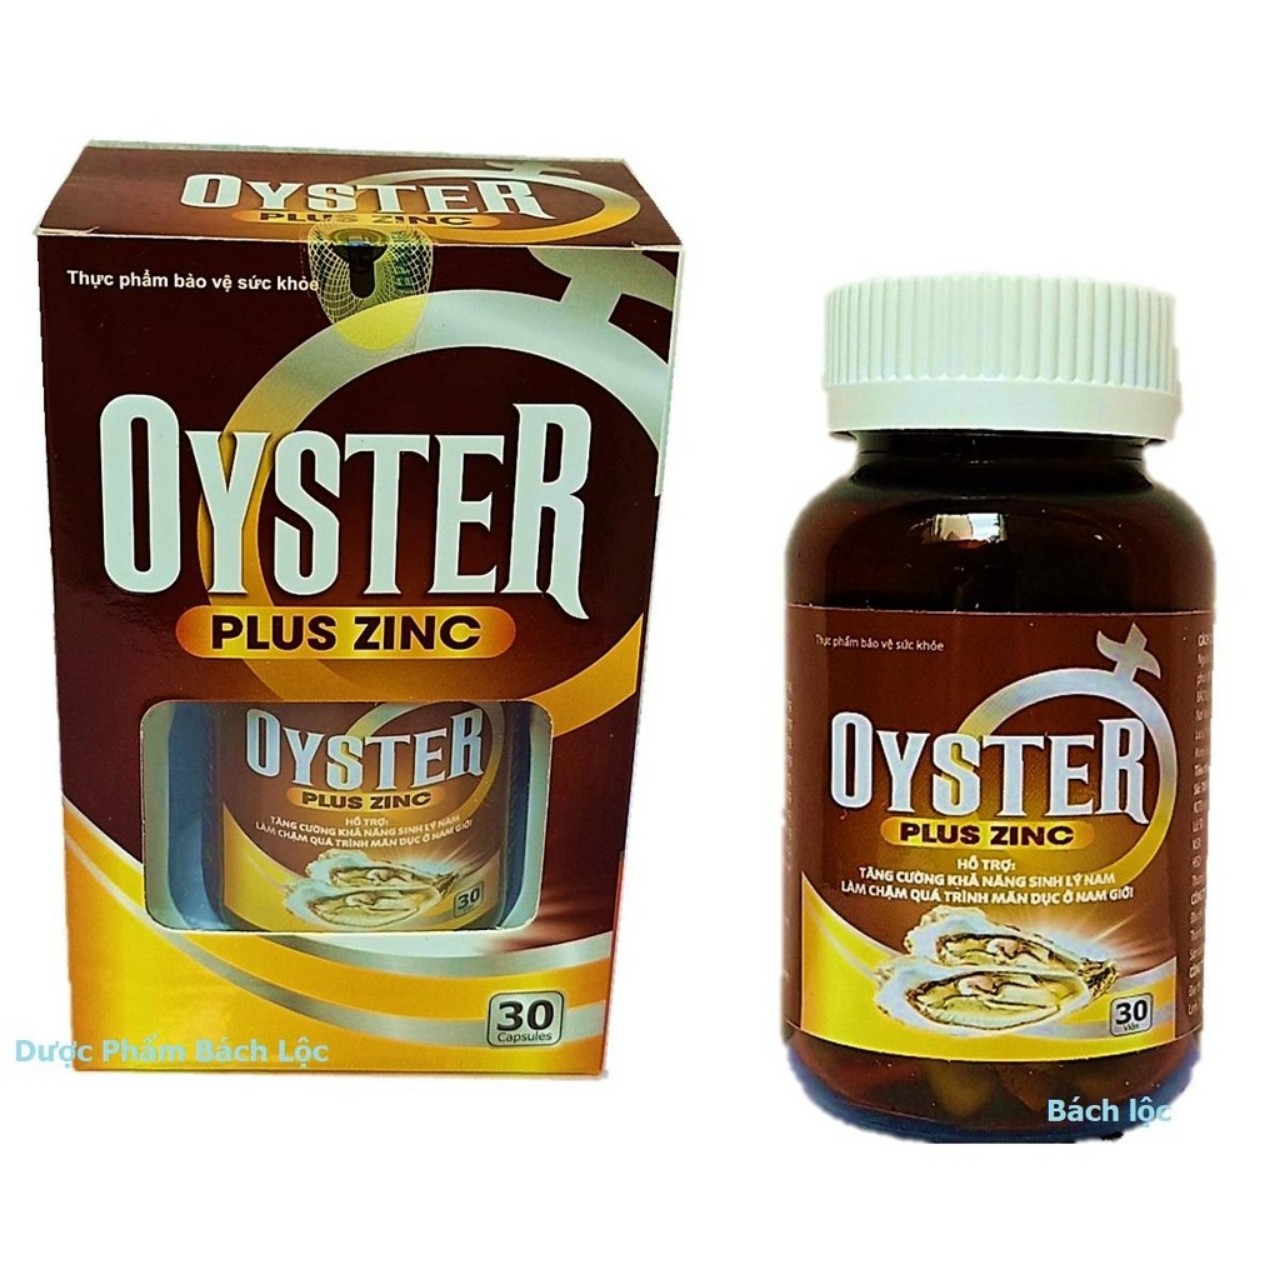 Hàu Biển Oyster Plus Zinc - tăng cường sinh lý phái mạnh- Lọ 30 viên - Hàu Biển Oyster Plus Zinc